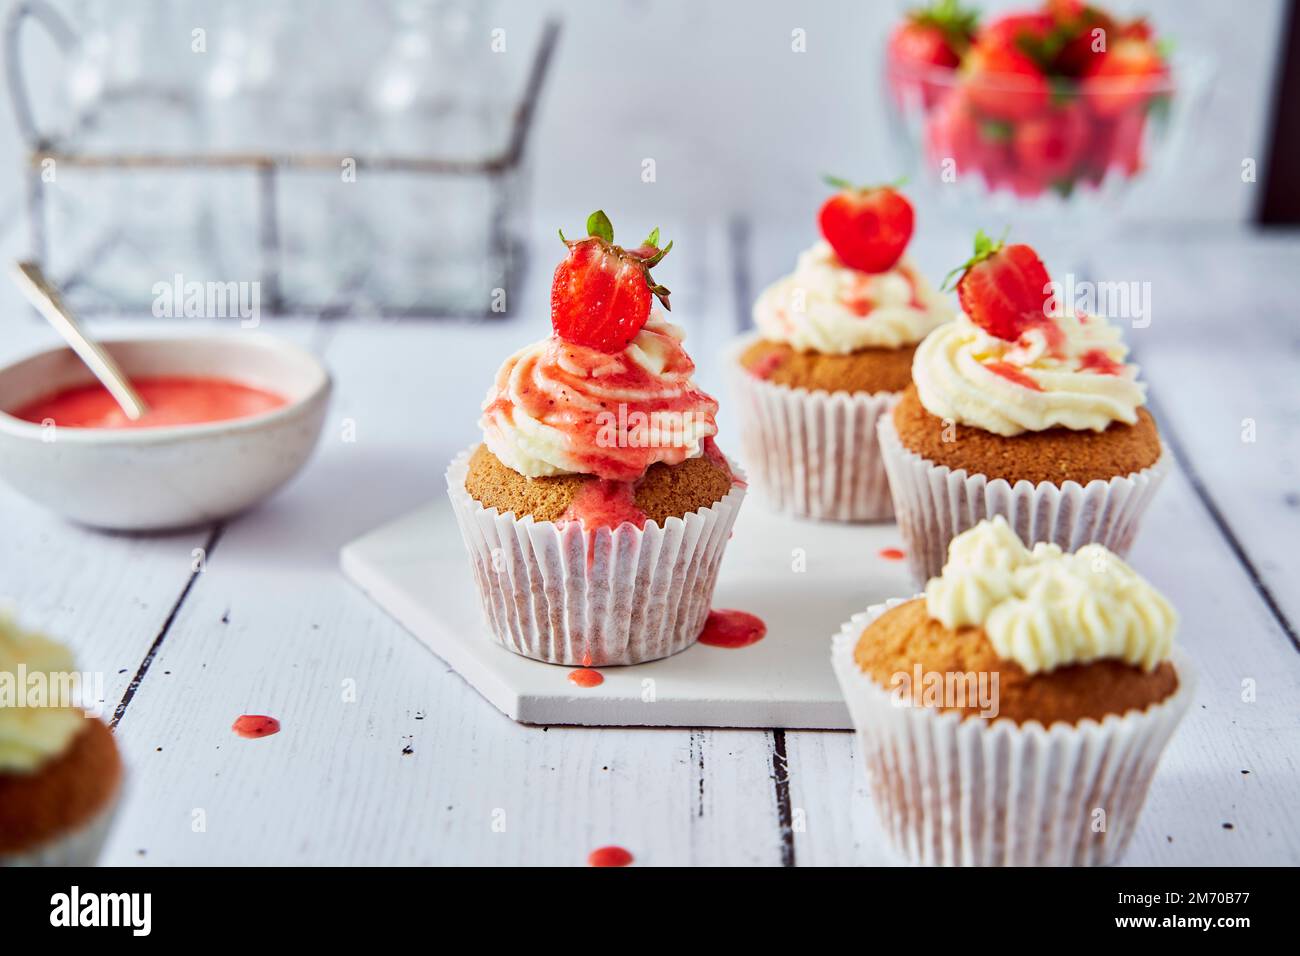 Cupcakes aux fraises avec glaçage au fromage à la crème et coulis Banque D'Images